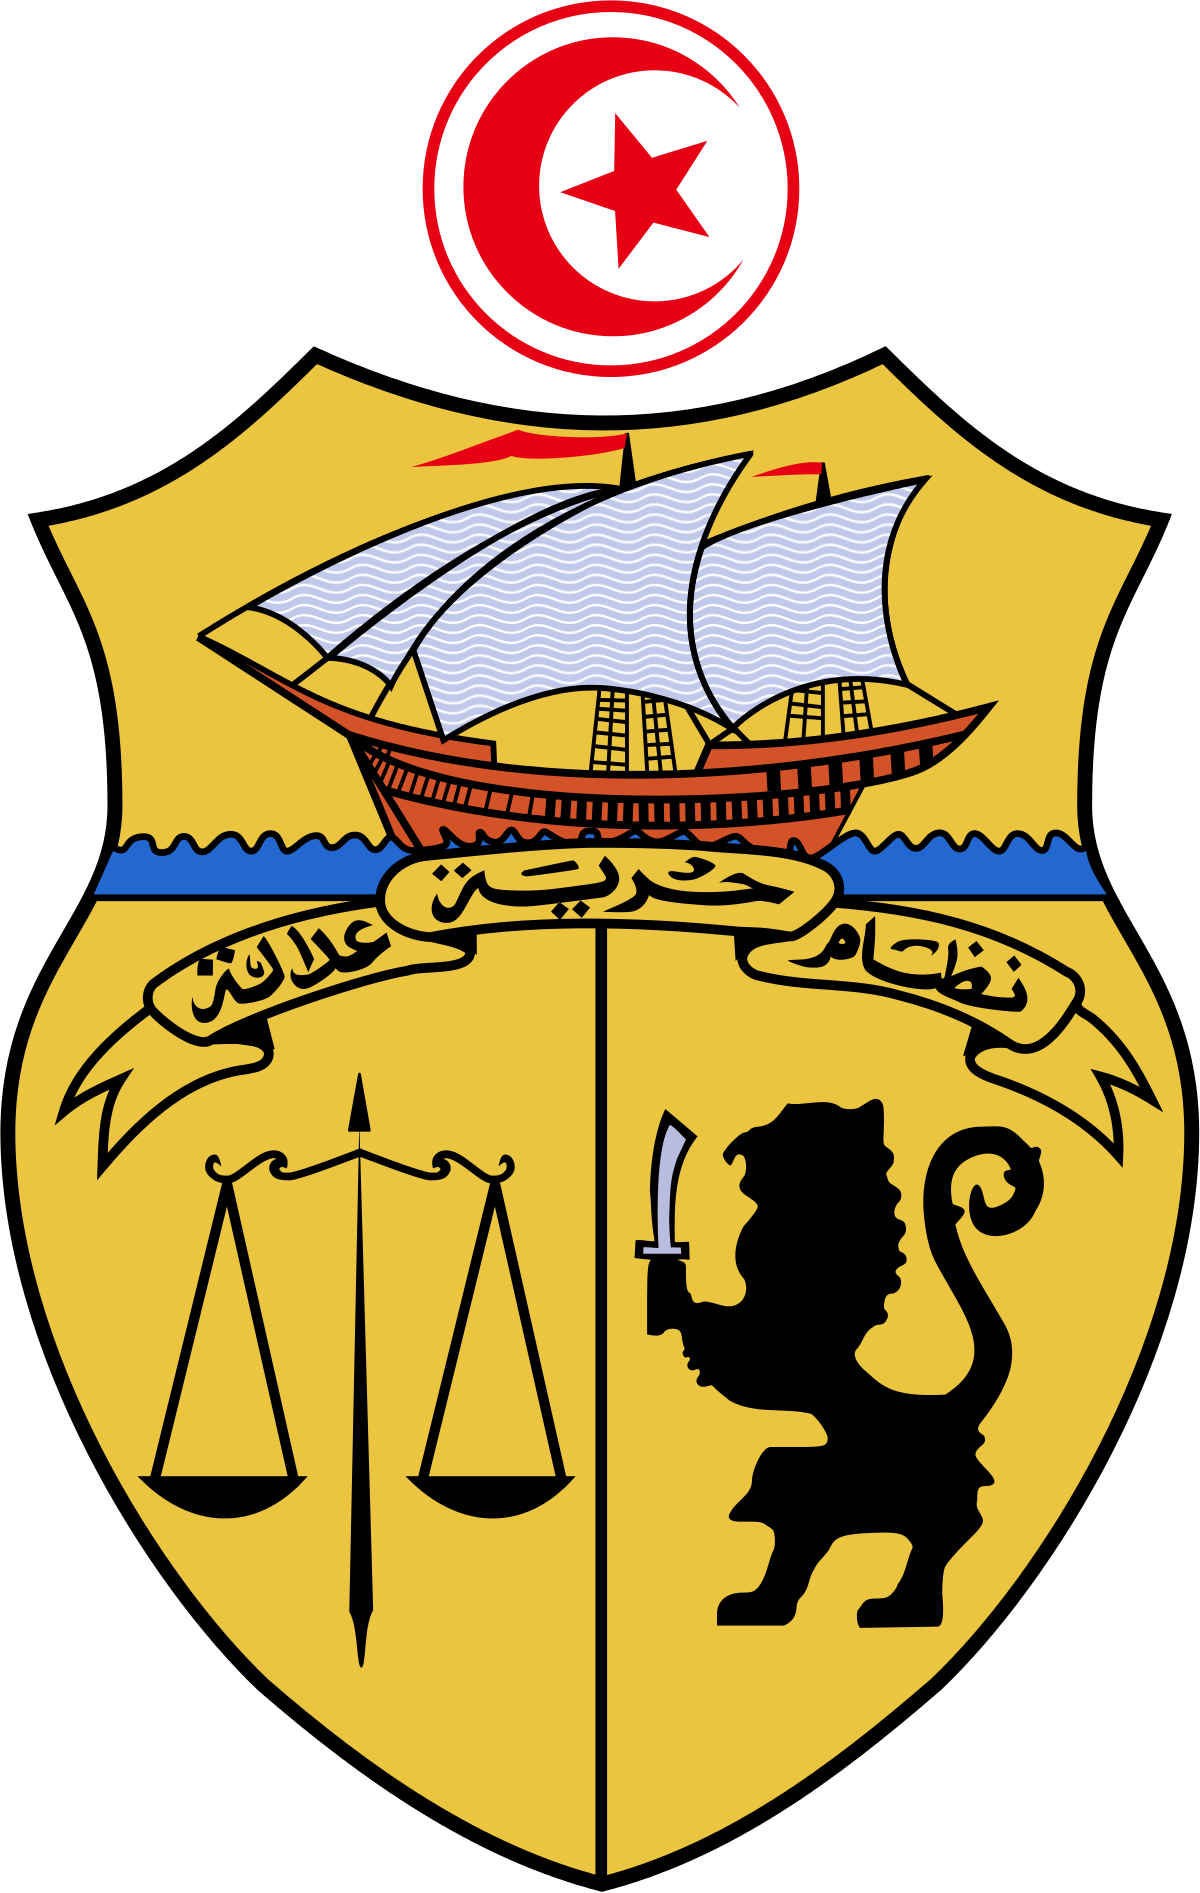 Pastor clipart family quarrel. Coat of arms tunisia